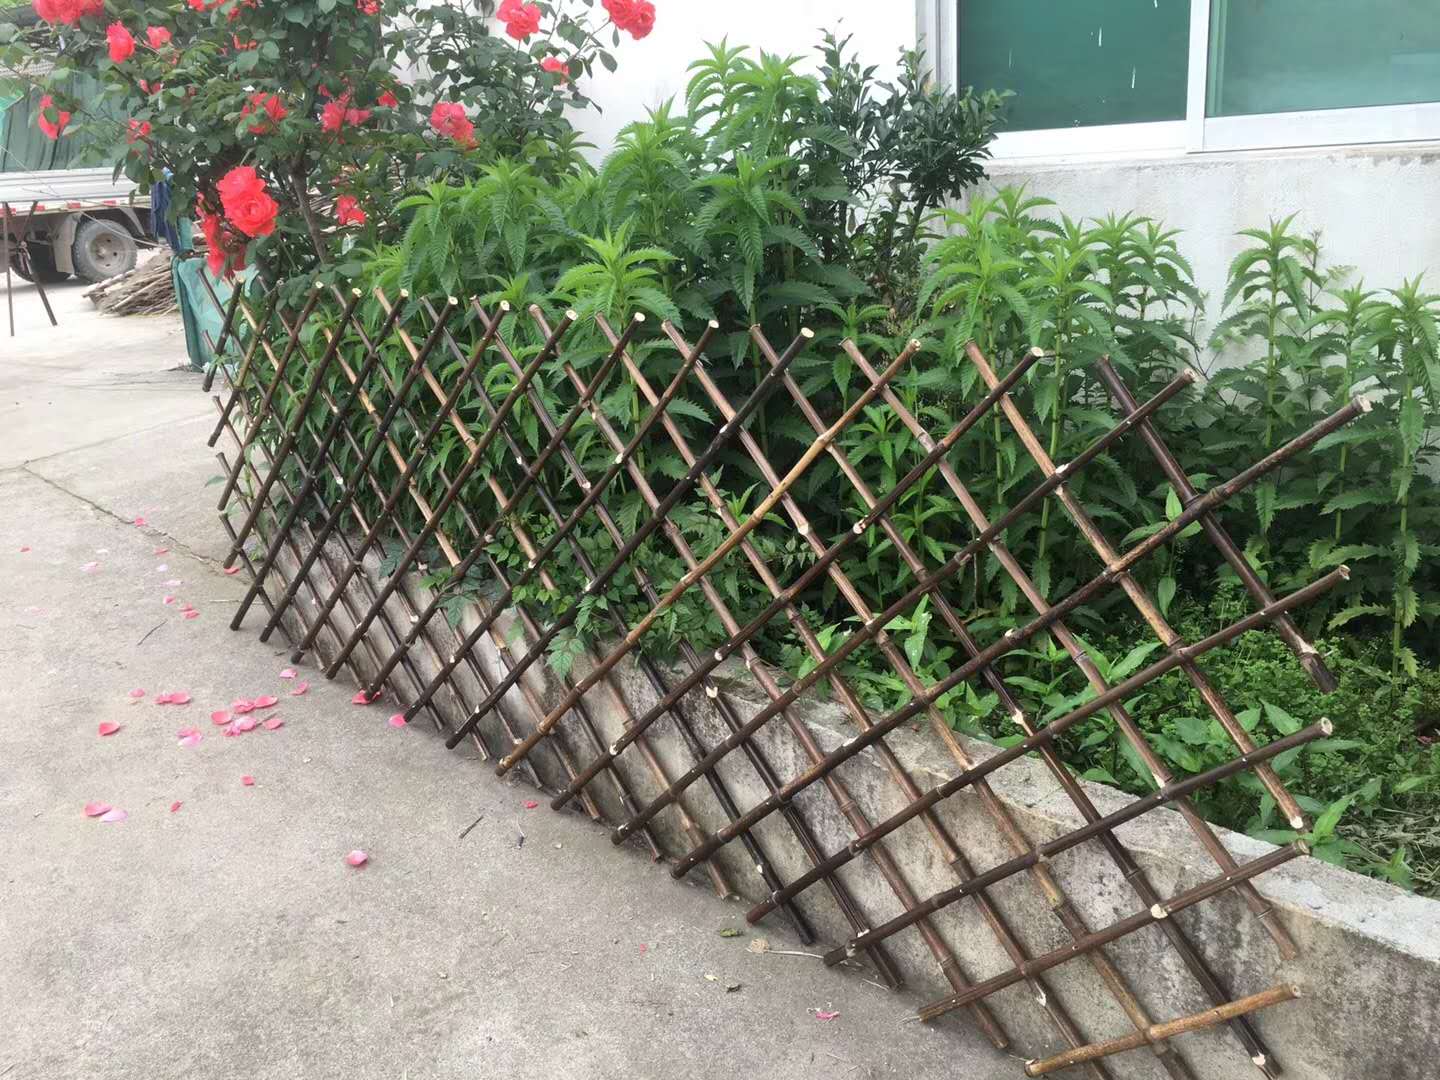 选择竹子制作的竹篱笆围栏是否合适?